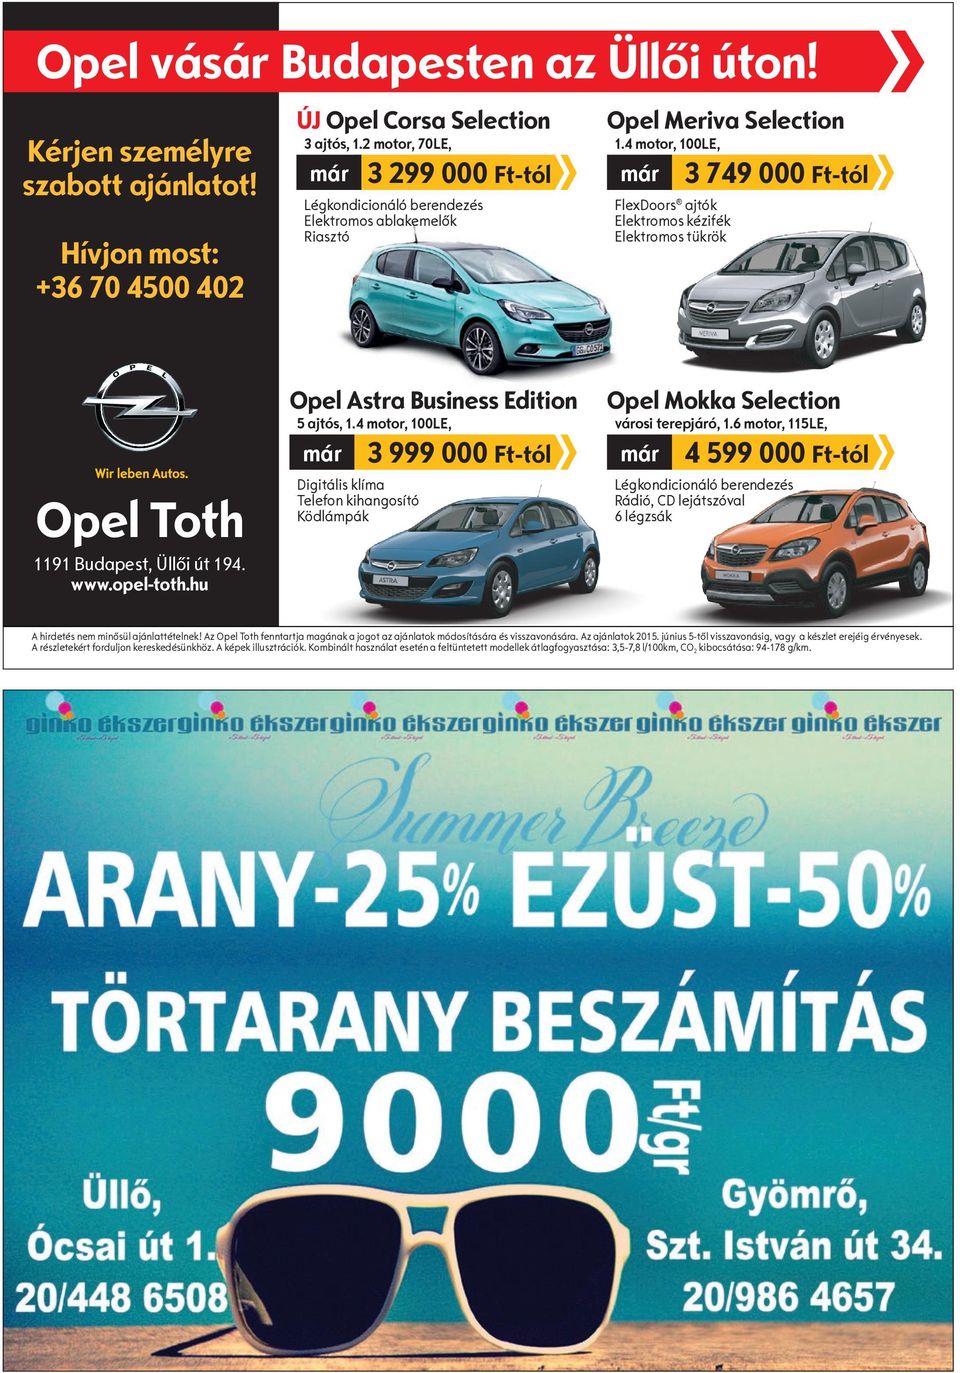 4 motor, 100LE, már FlexDoors ajtók Elektromos kézifék Elektromos tükrök 3 749 000 Ft-tól Opel Toth 1191 Budapest, Üllői út 194. www.opel-toth.hu Opel Astra Business Edition 5 ajtós, 1.